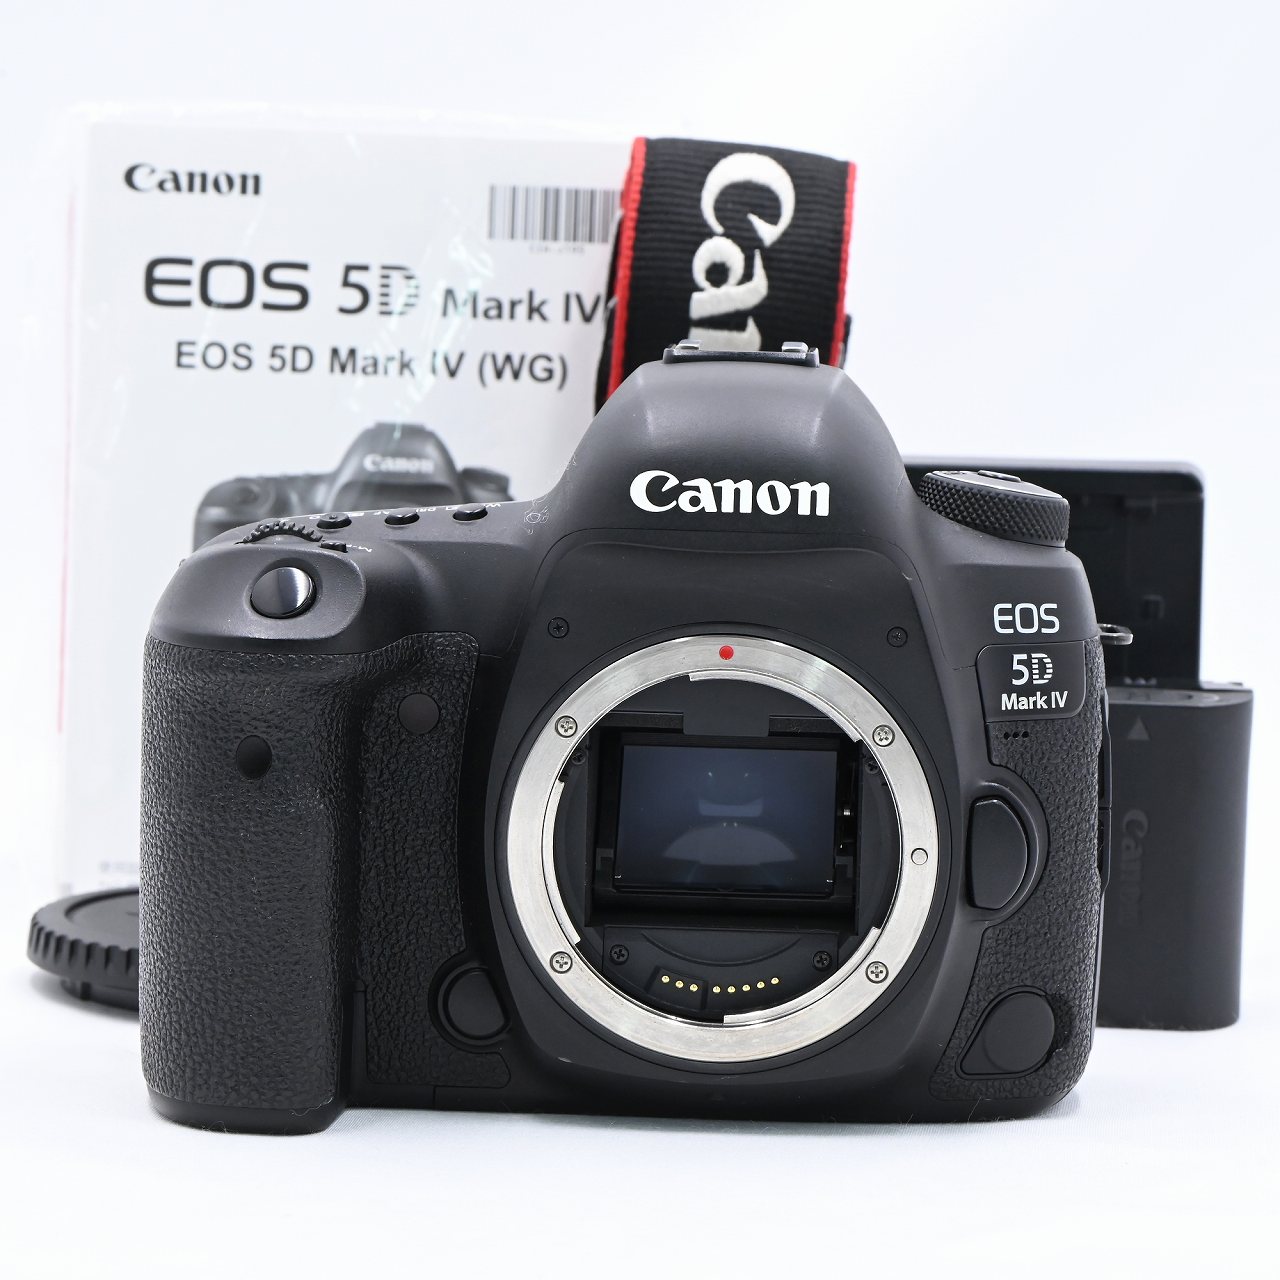 キヤノン Canon EOS 5D Mark IV ボディ デジタル一眼レフカメラ【中古】